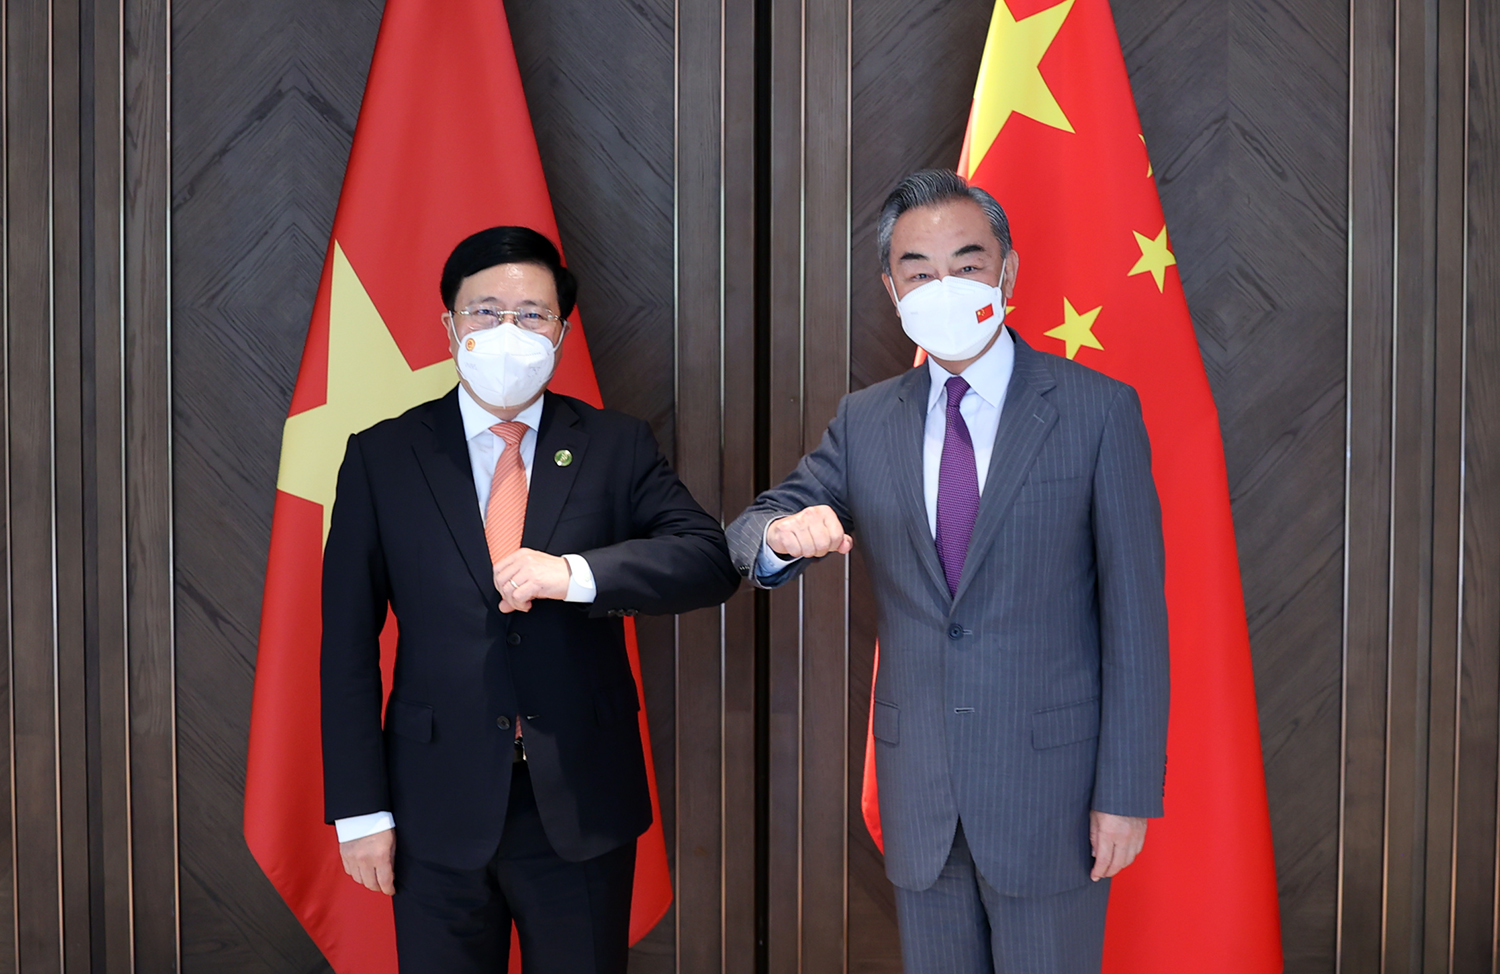  Việt Nam đề nghị Trung Quốc tạo điều kiện thông quan hàng hóa qua cửa khẩu - Ảnh 1.